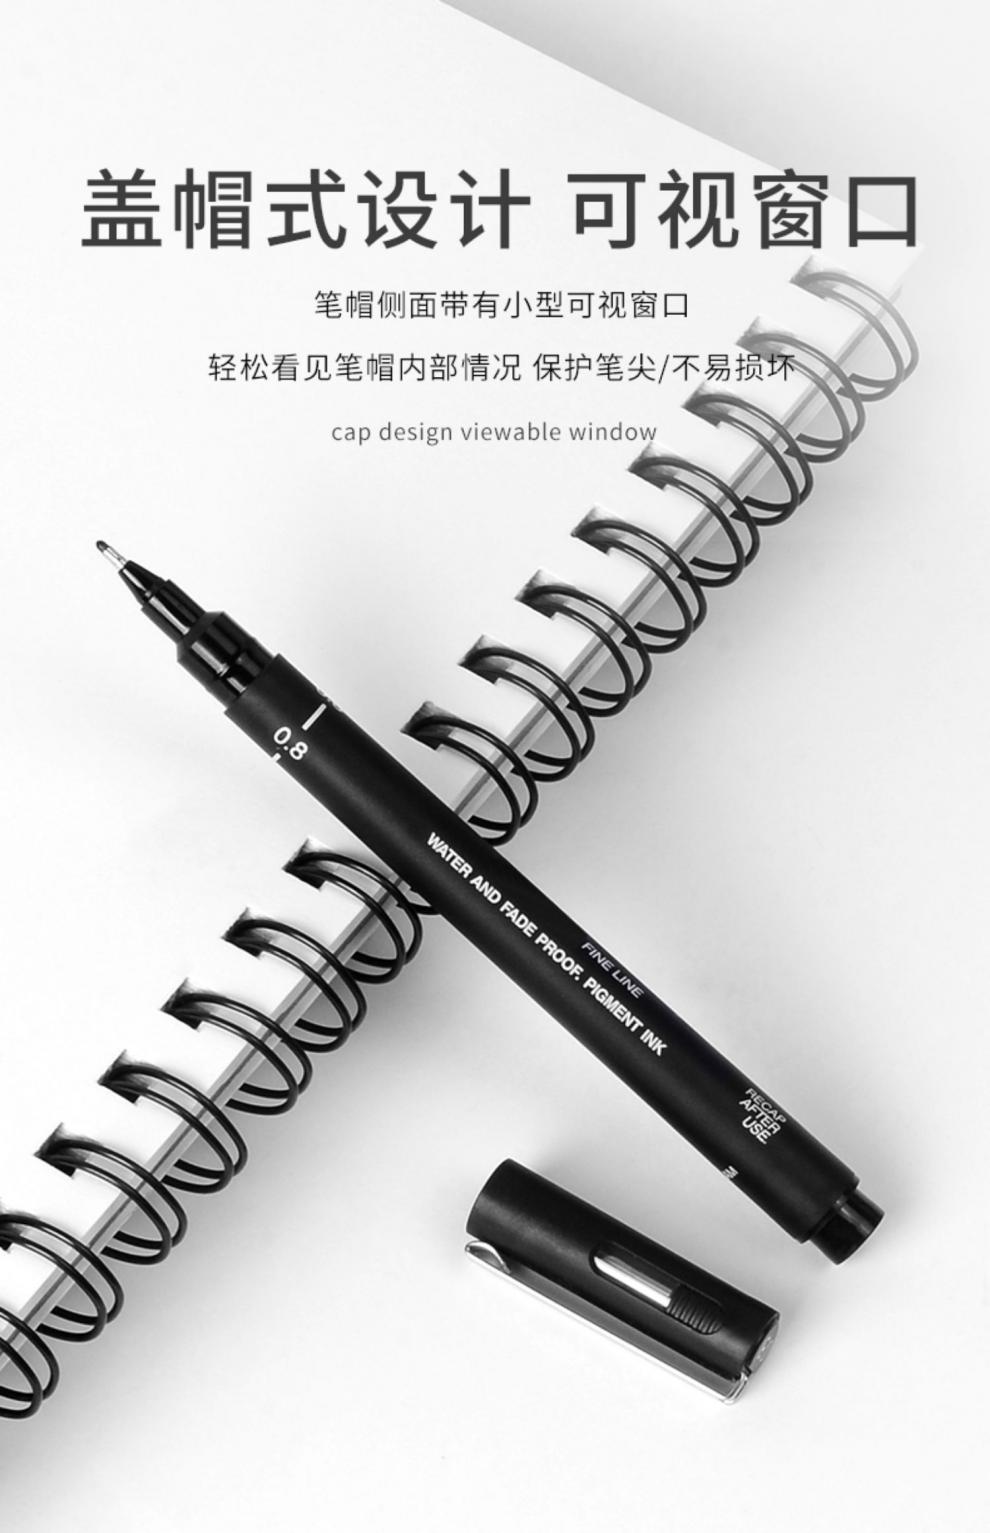 惠阙芸针管笔美术专用套装勾线笔学生用动漫设计绘画笔描边笔草图手绘